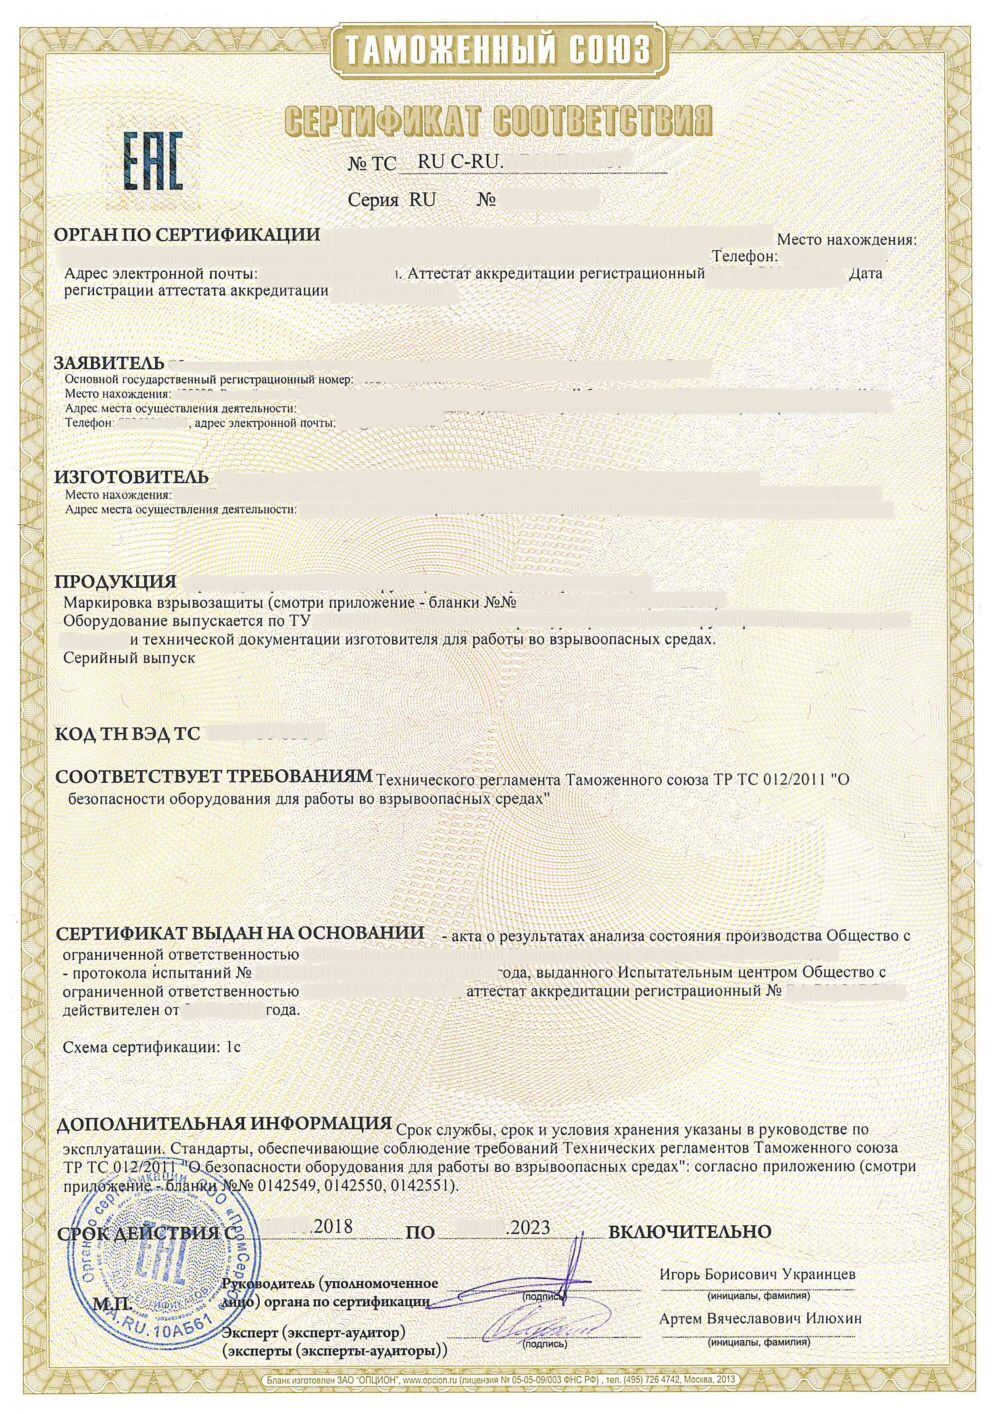 Russian Technical Passport